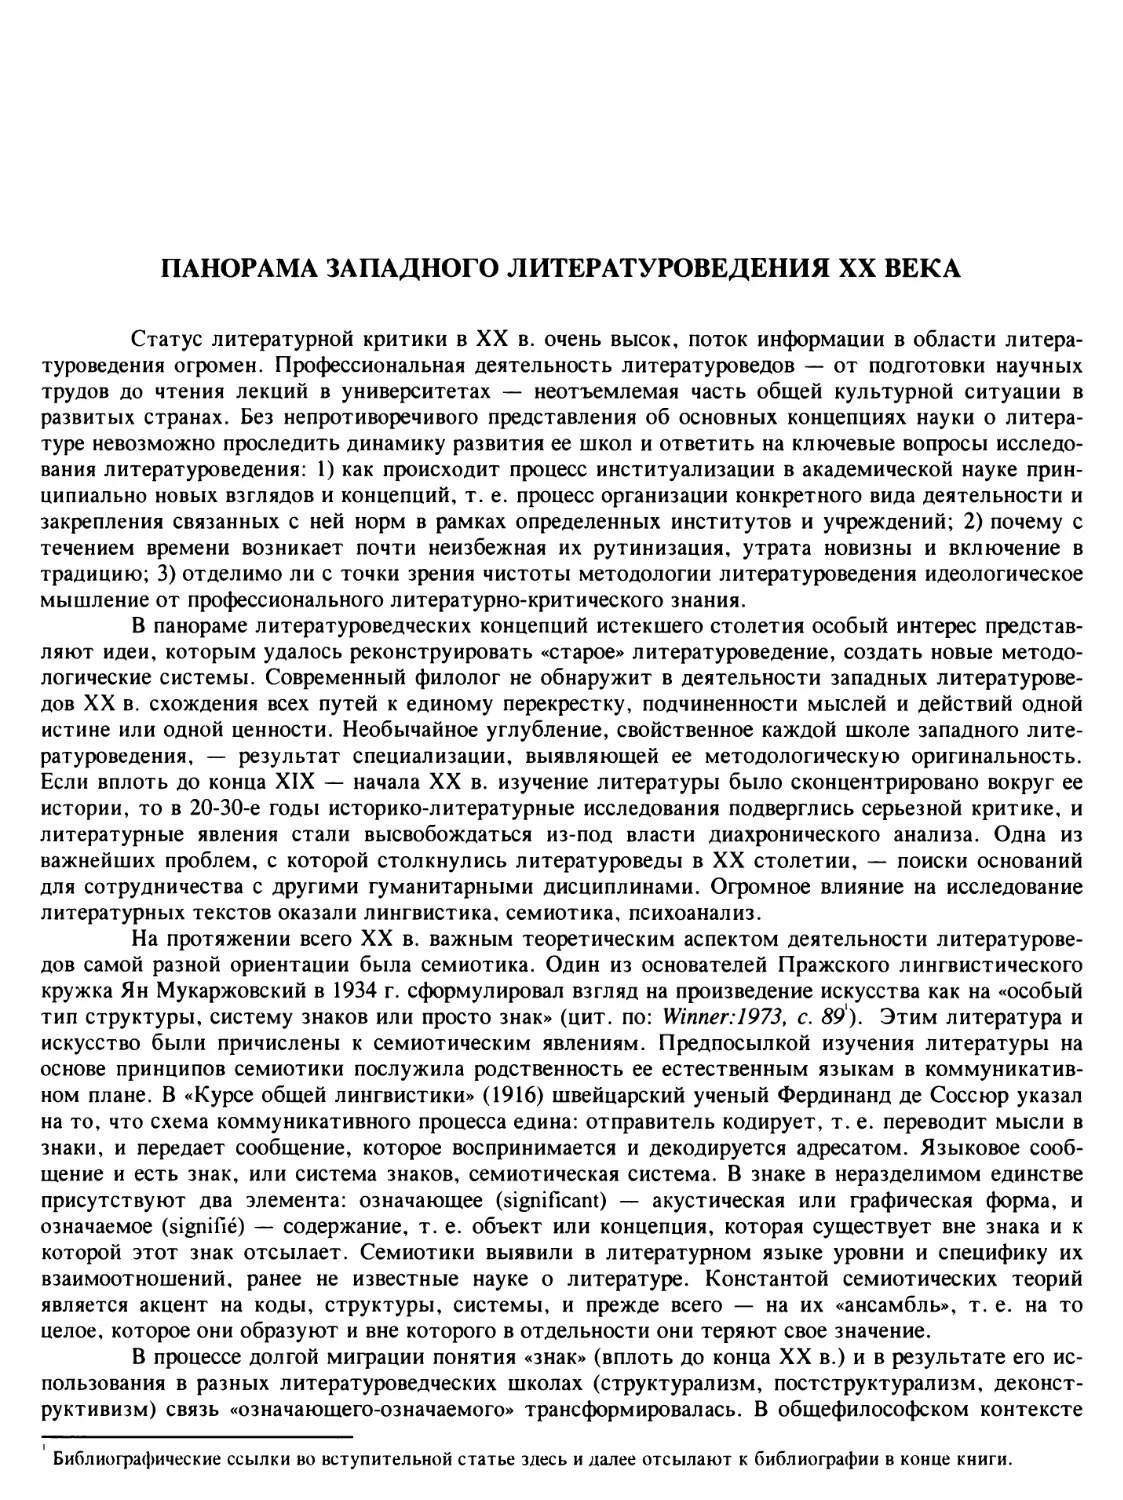 Е. Л. Цурганова. Панорама западного литературоведения XX века